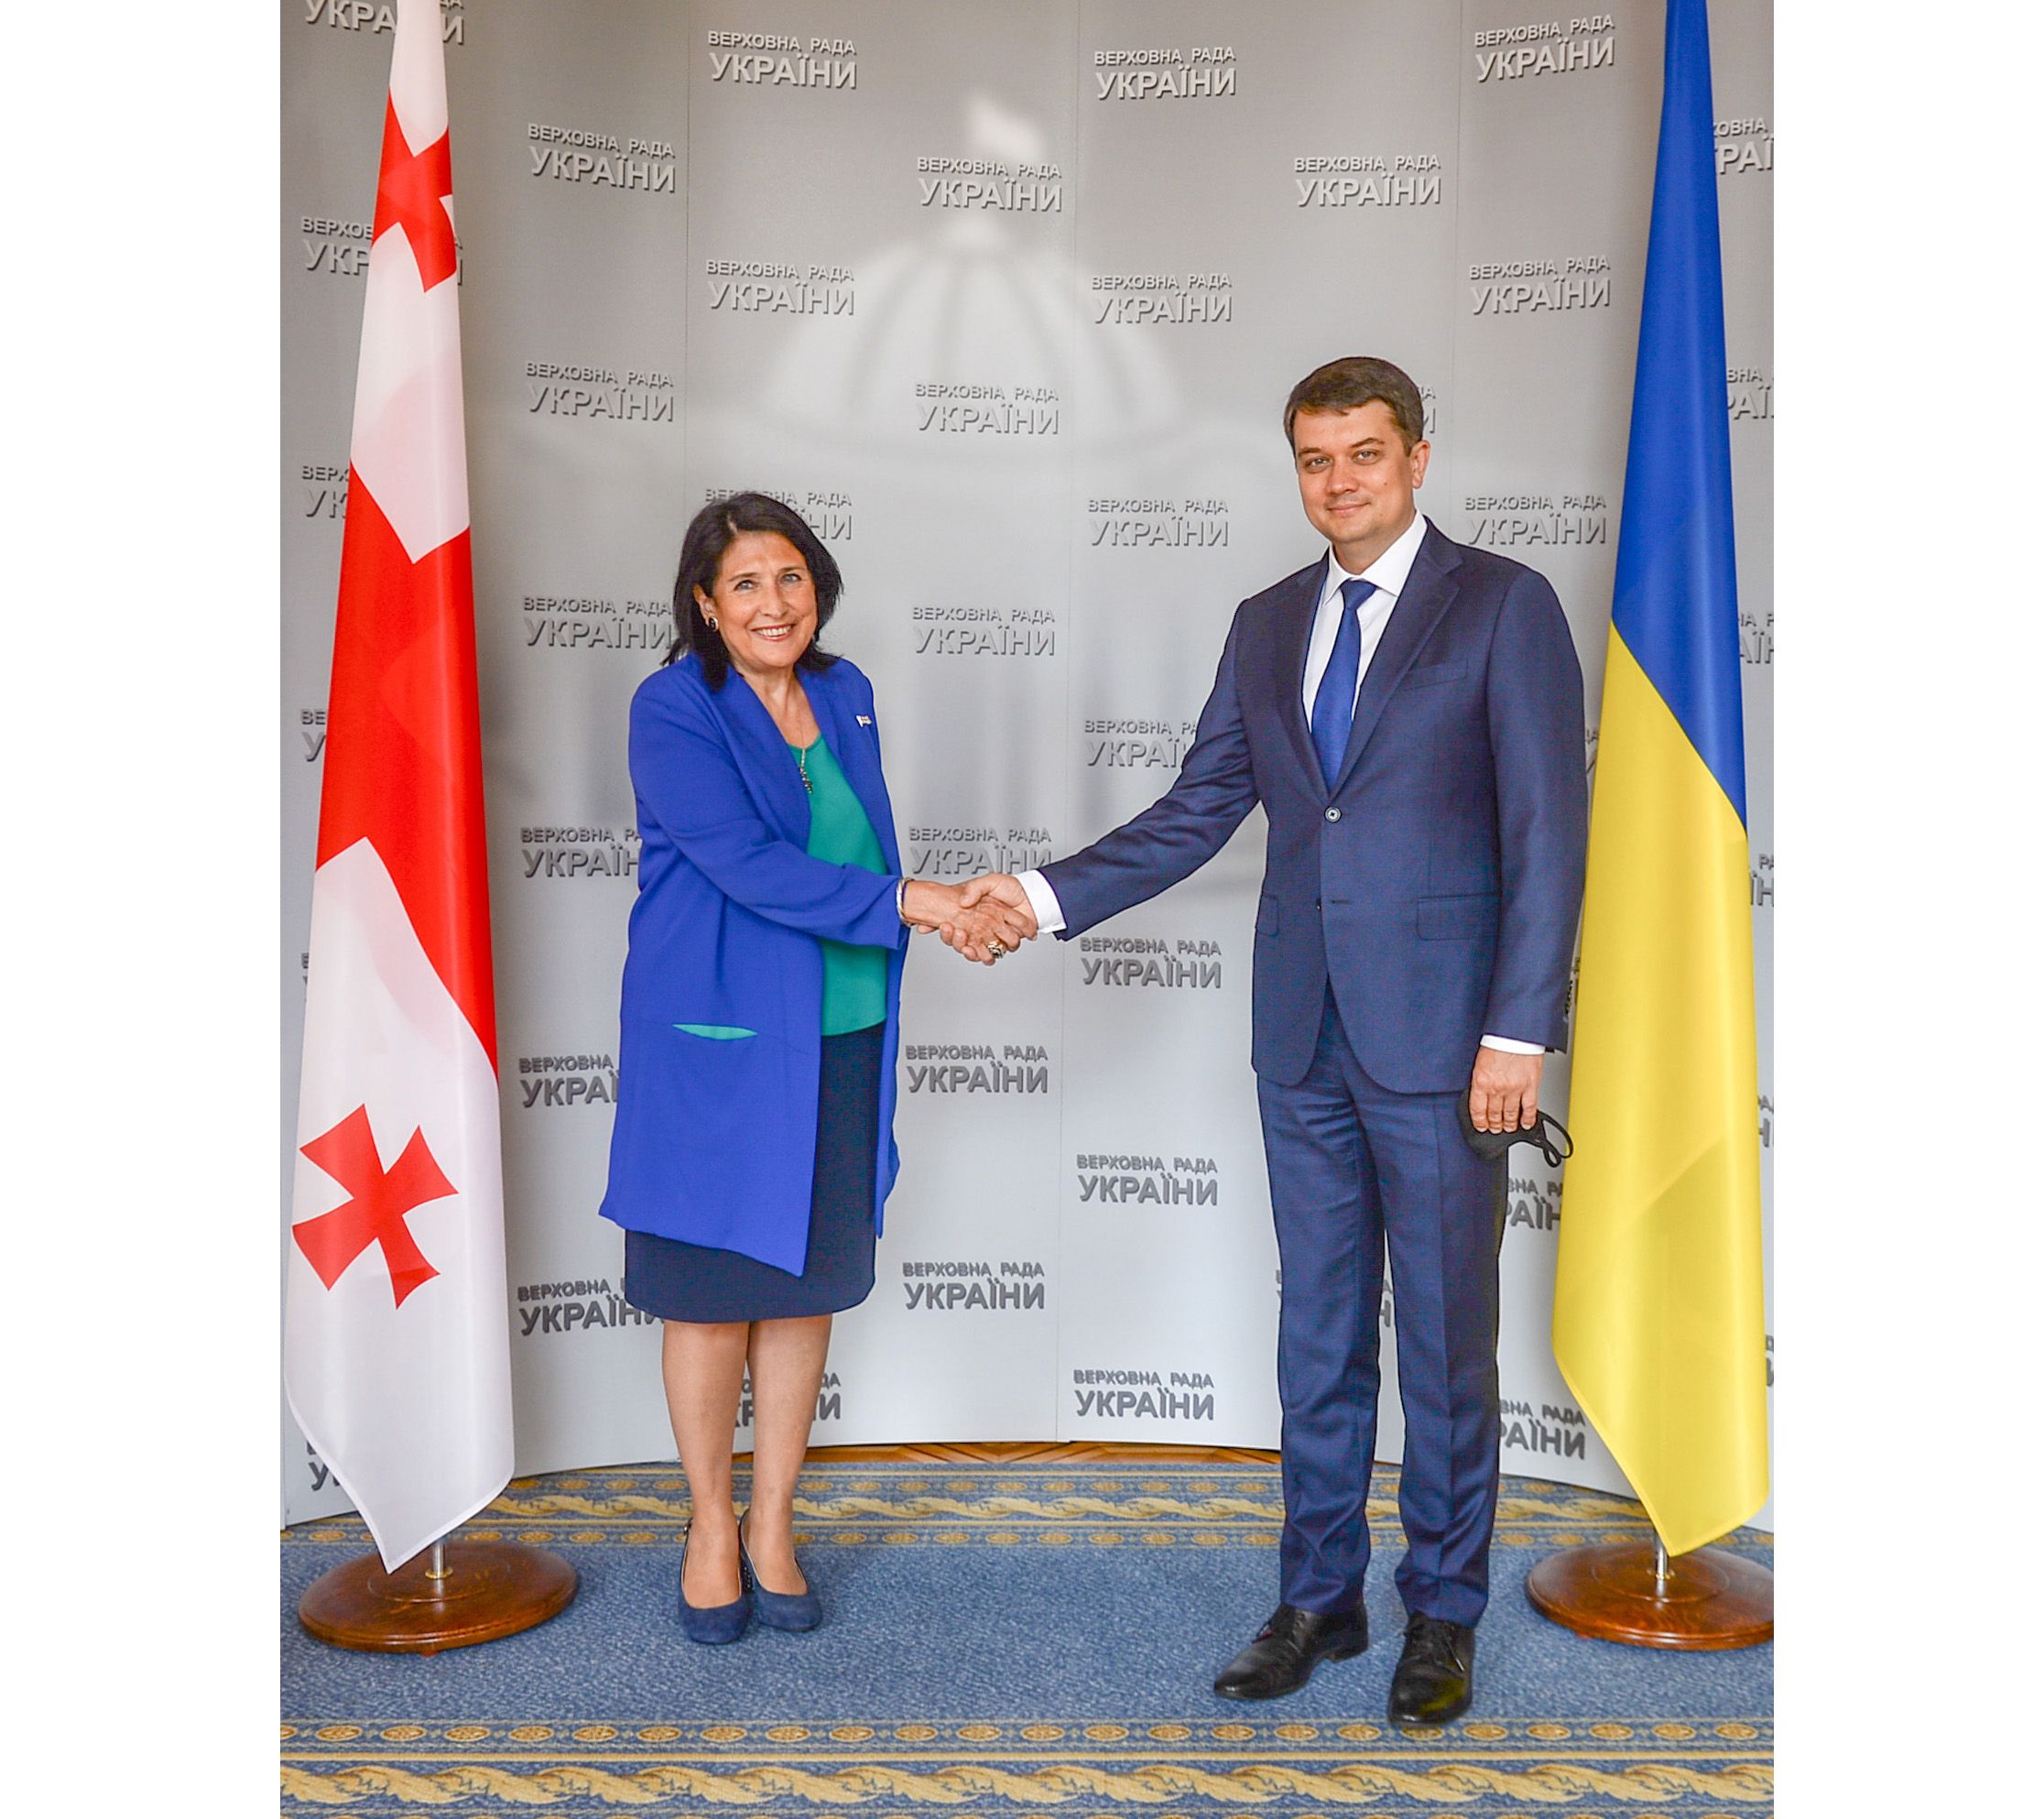 Україну та Грузію сьогодні об’єднують схожі виклики та спільне європейське і євроатлантичне майбутнє